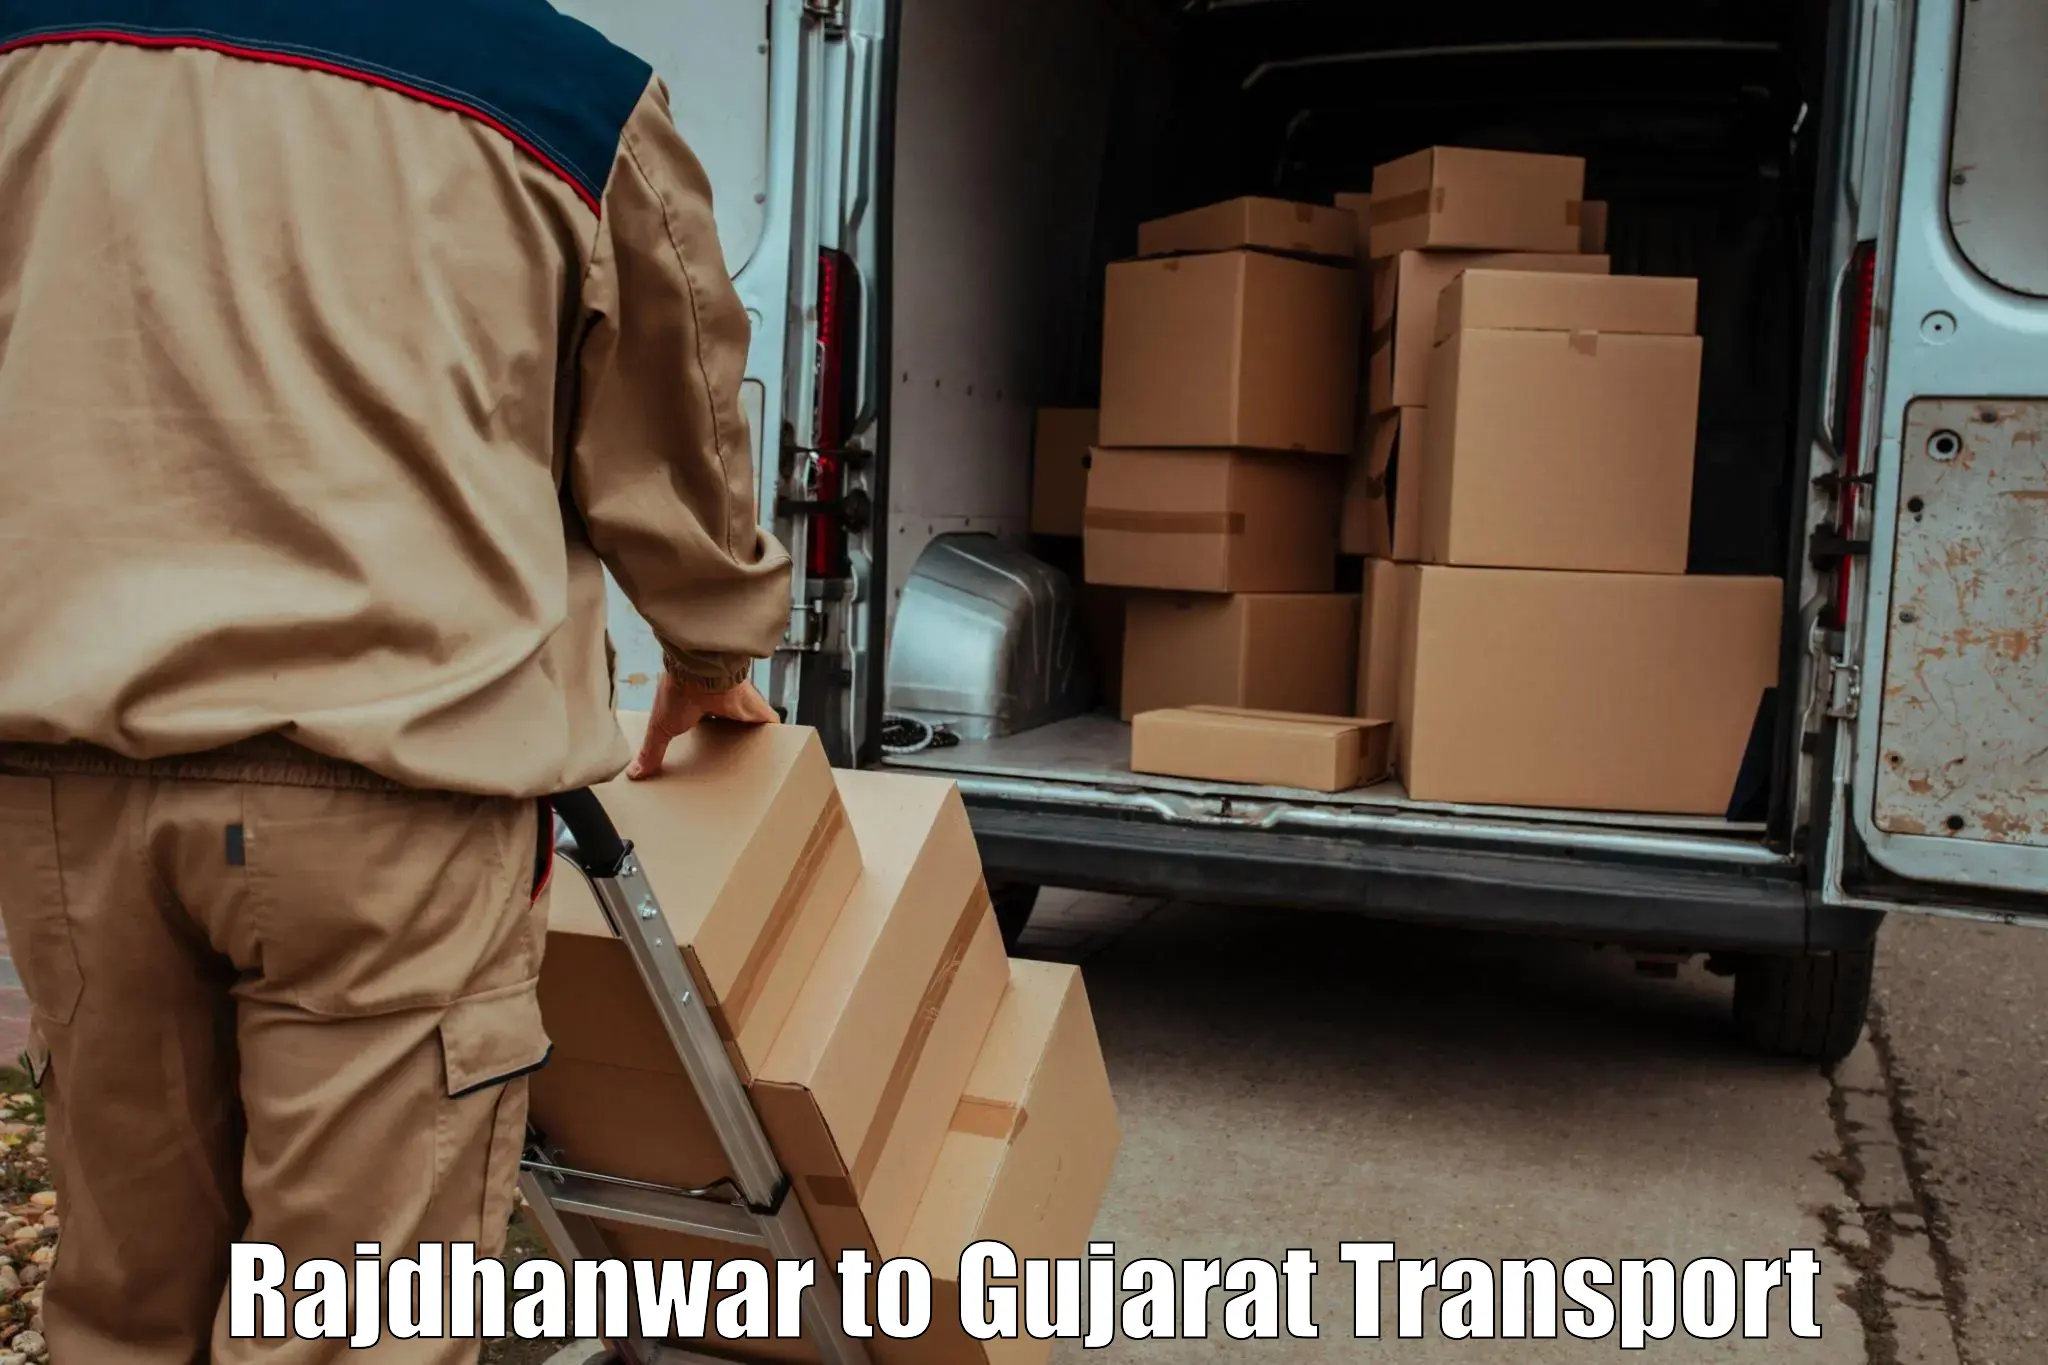 Delivery service Rajdhanwar to Nasvadi